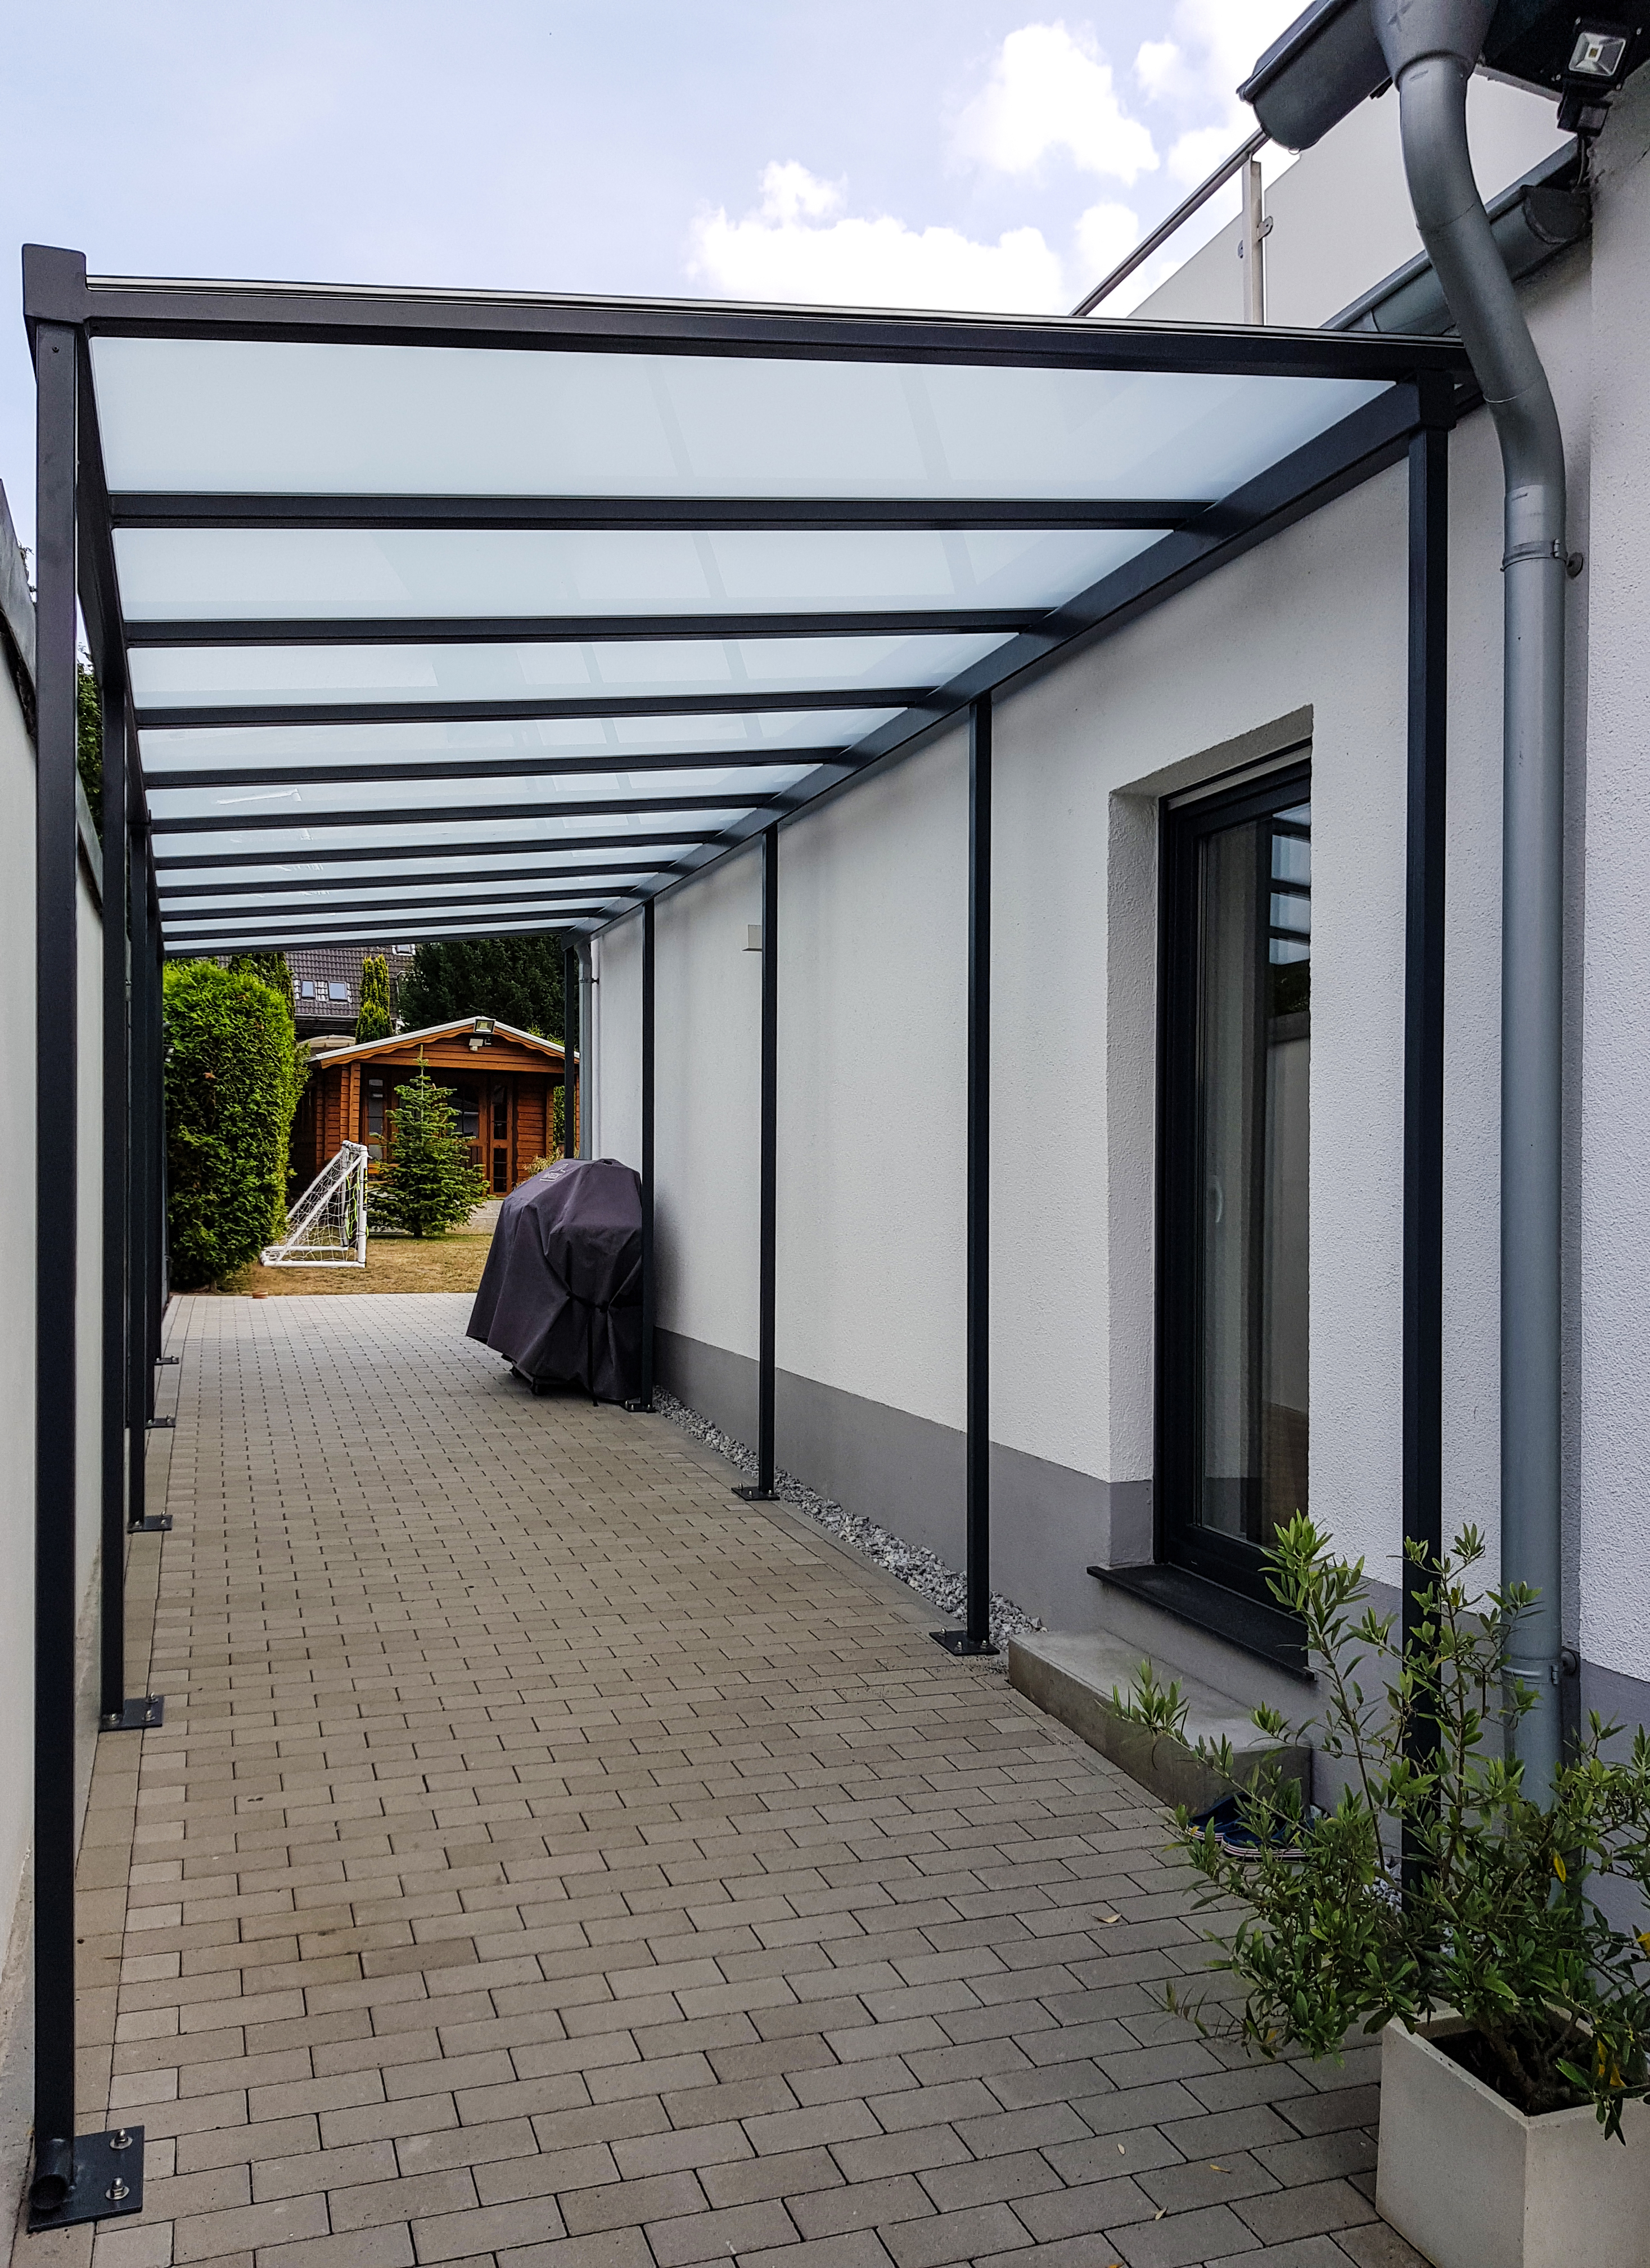 Edelstahlexperte Nappenfeld realisierte in Mülheim-Saarn eine Konstruktion, die Haus und Garage verbindet und die gepflasterte Fläche dazwischen großzügig überdach